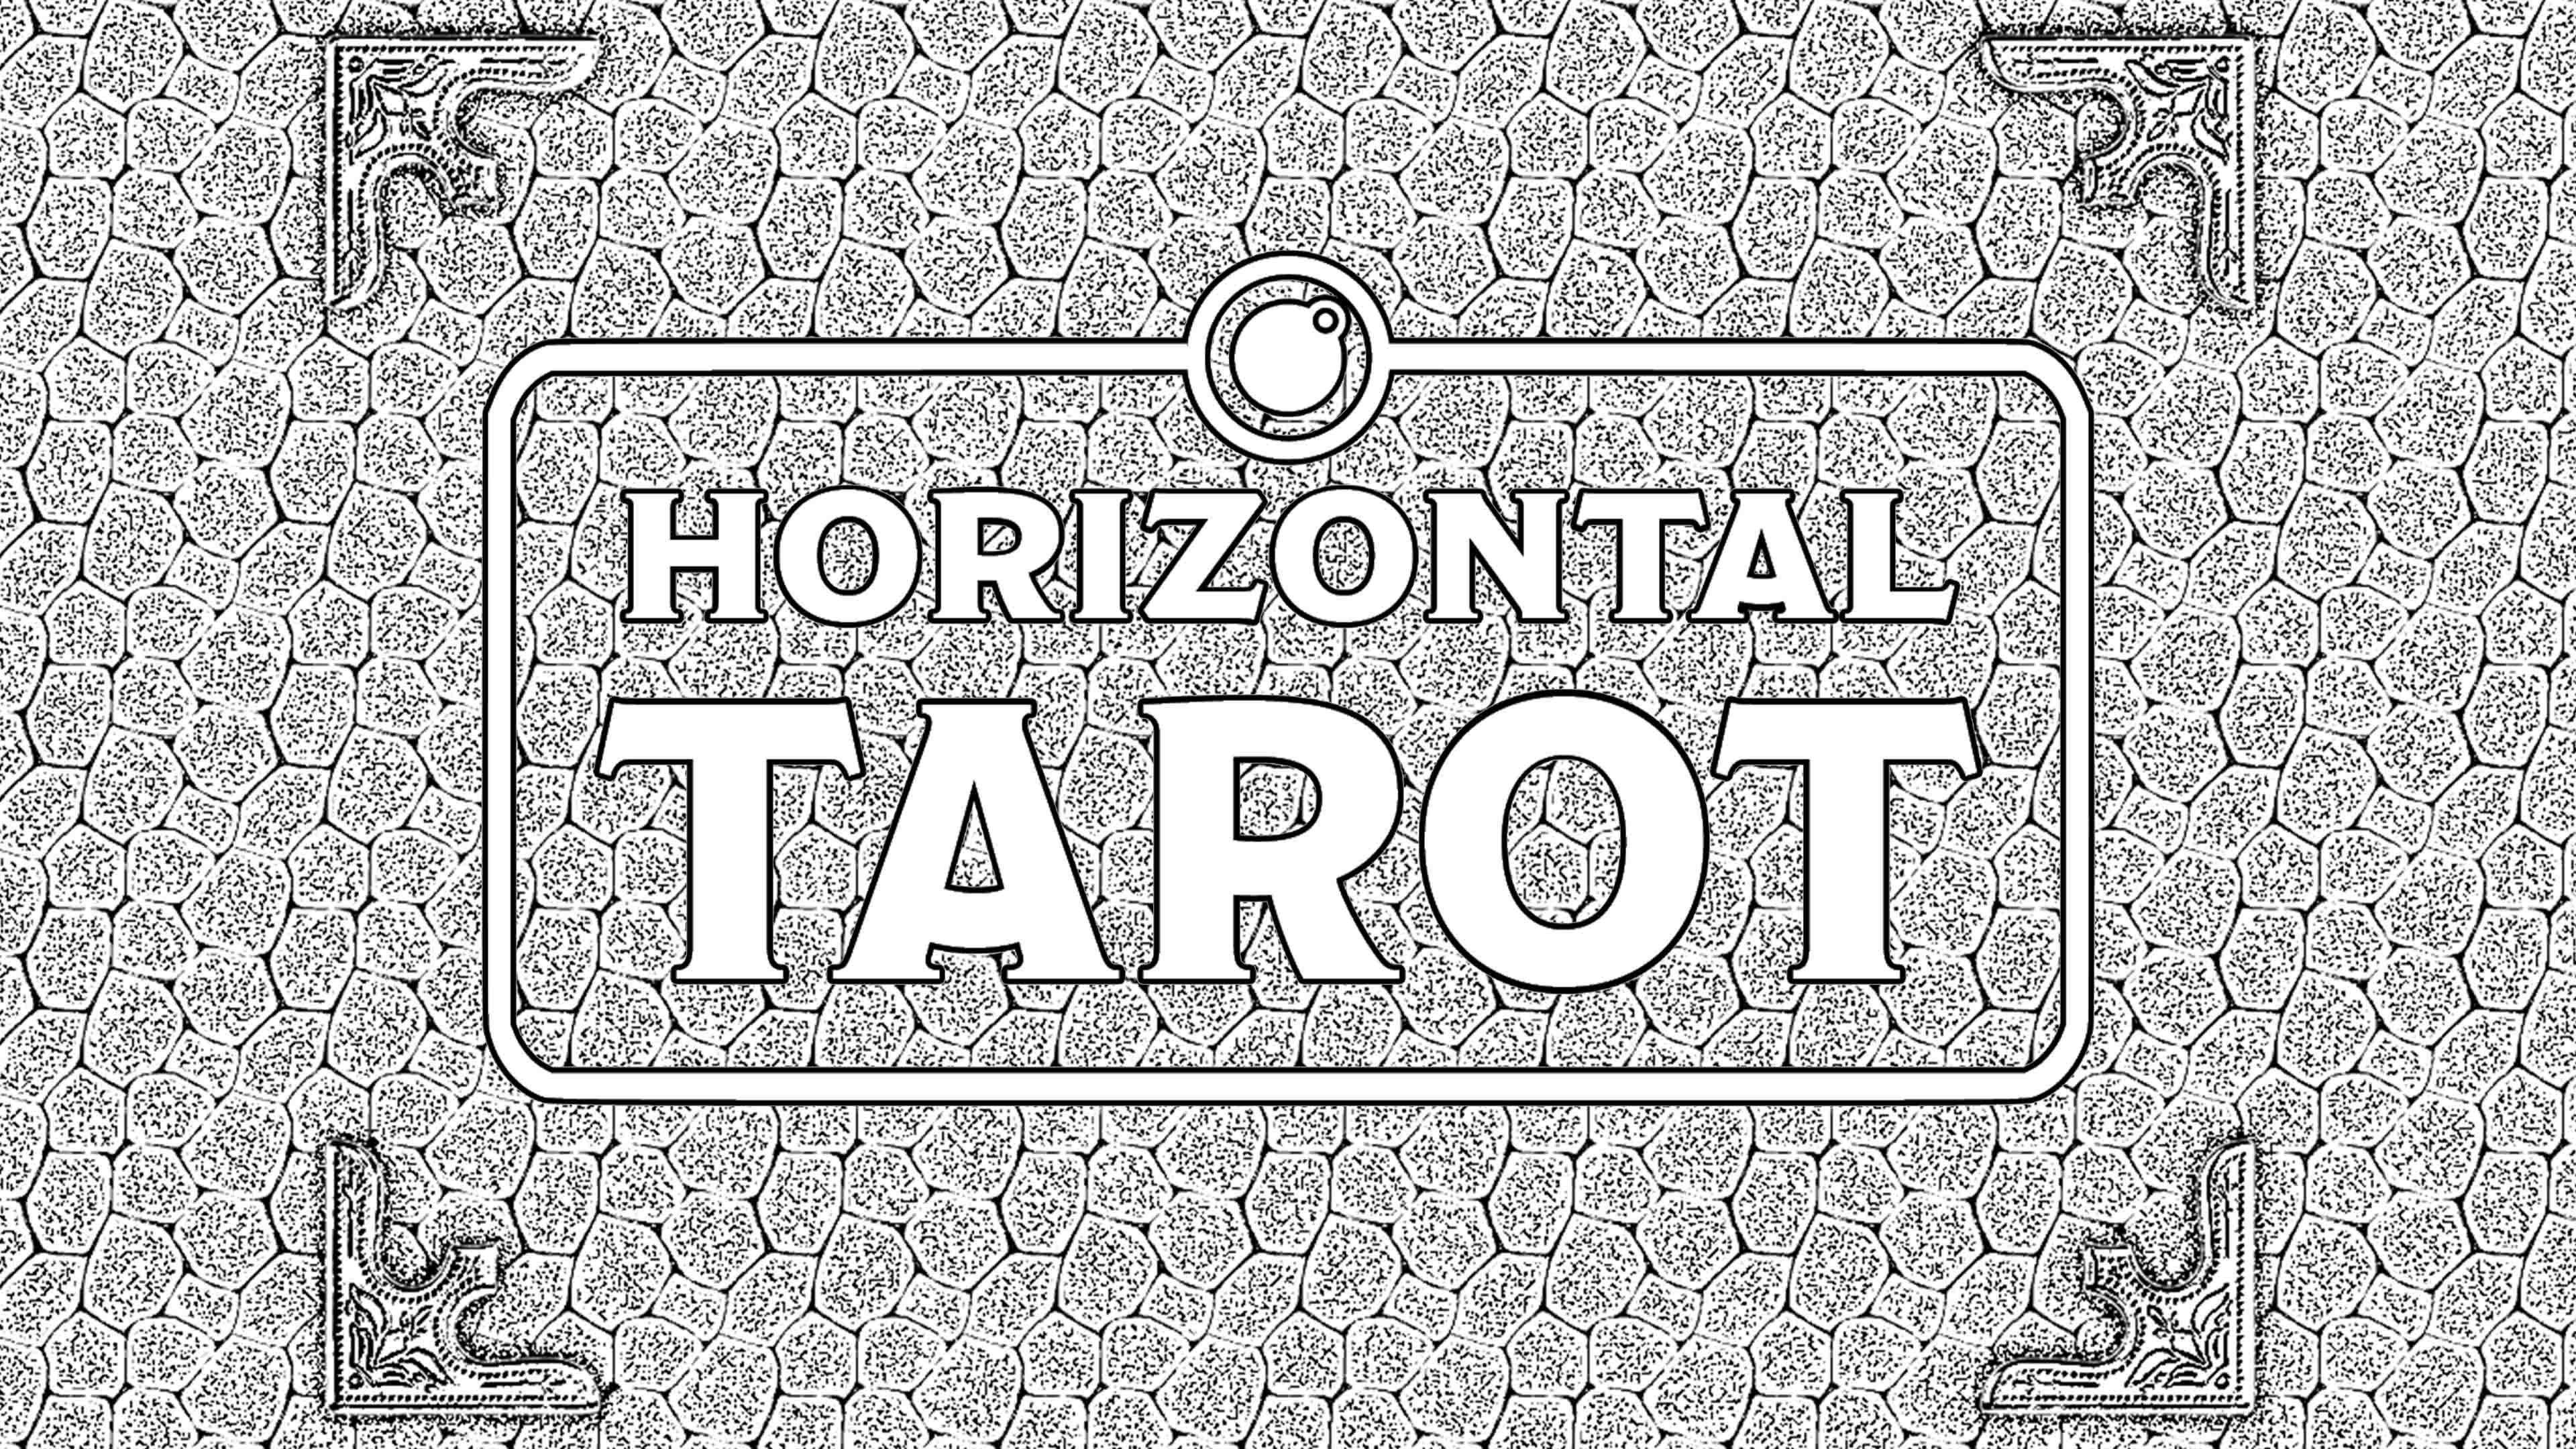 Horizontal Tarot